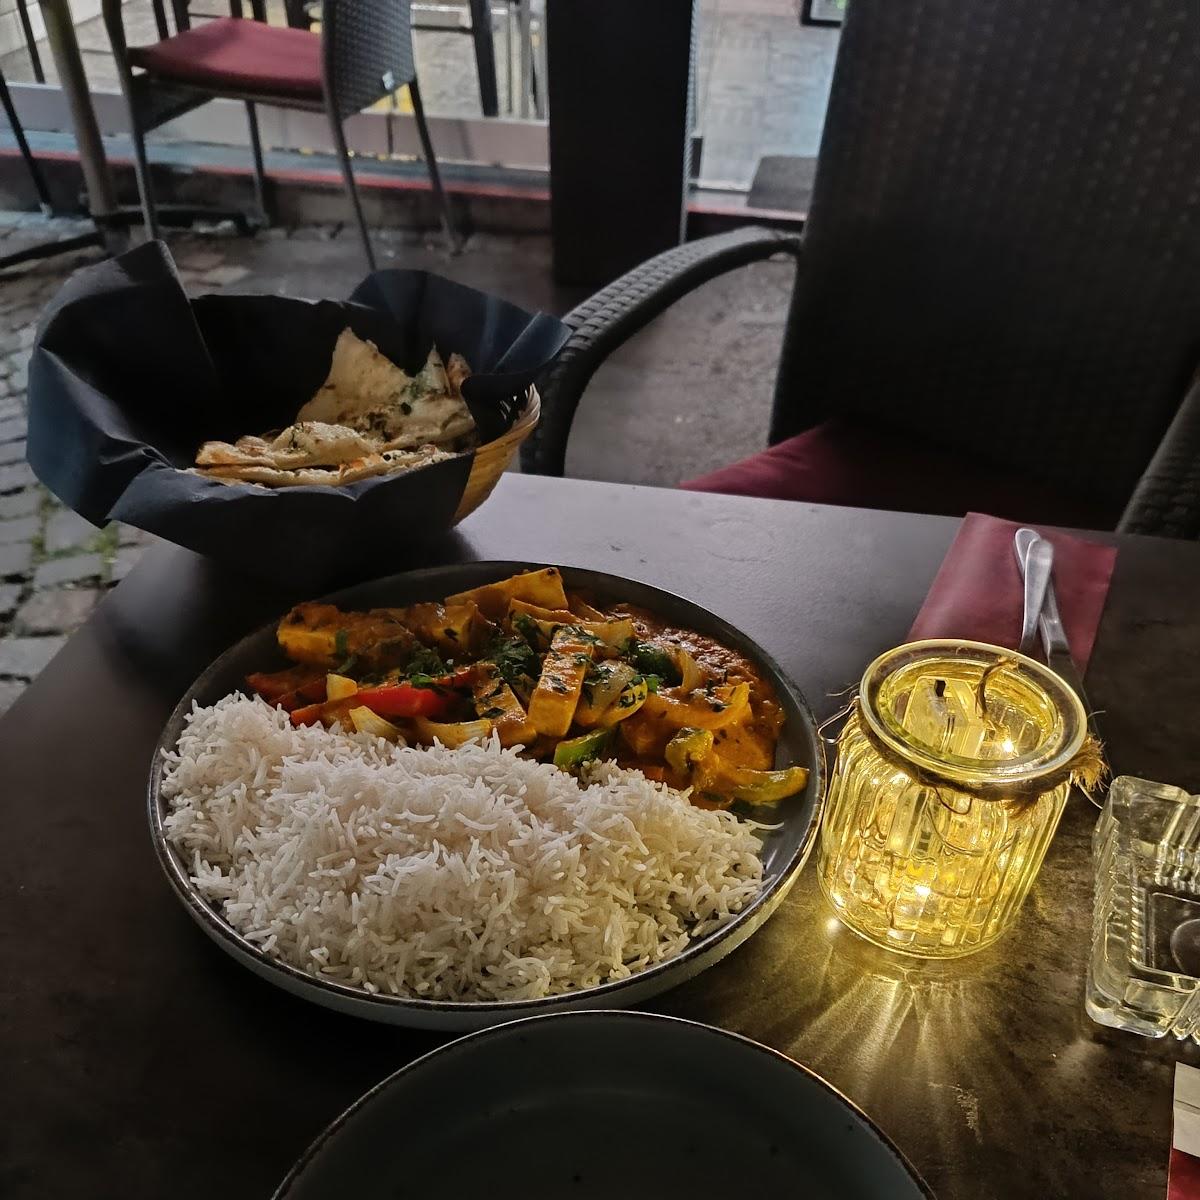 Restaurant "Heer indian Cuisine" in Aachen